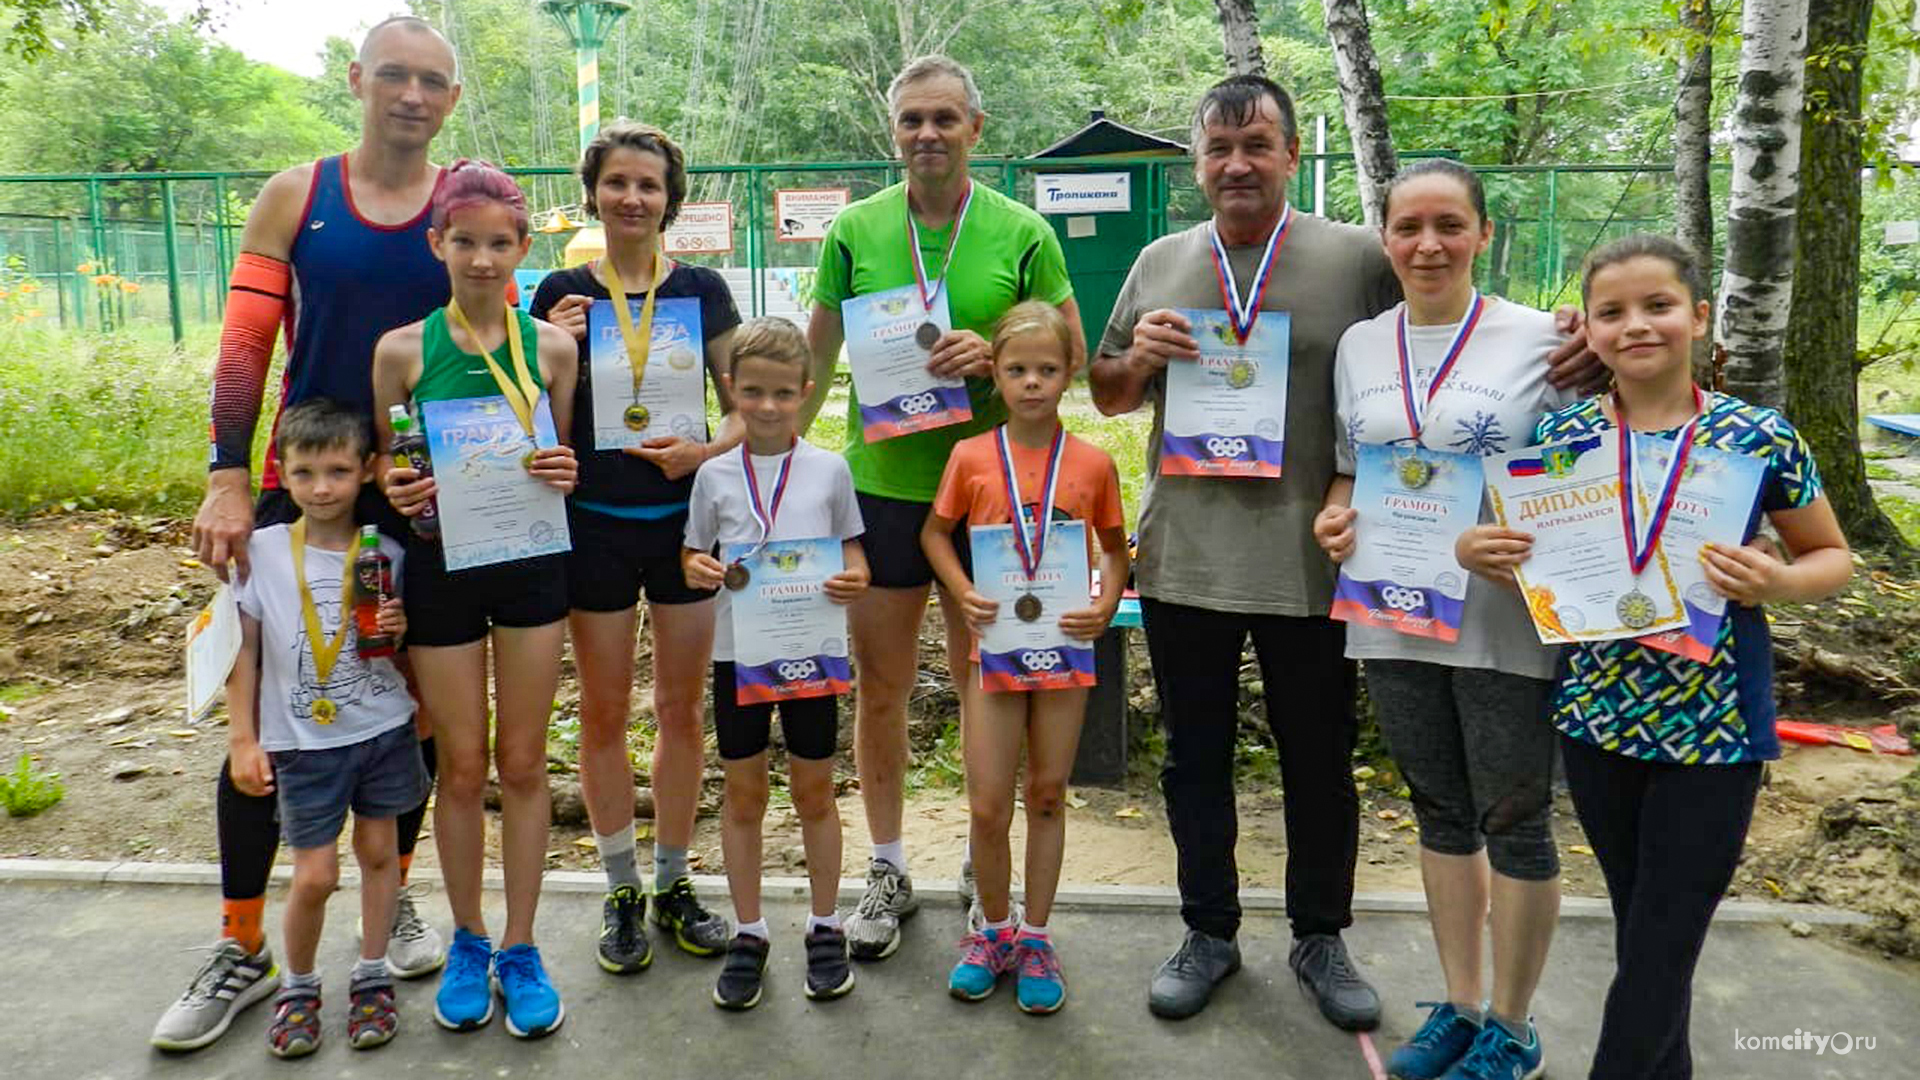 3 семьи объединил турнир по шоссейному бегу в парке Гагарина Комсомольска-на-Амуре